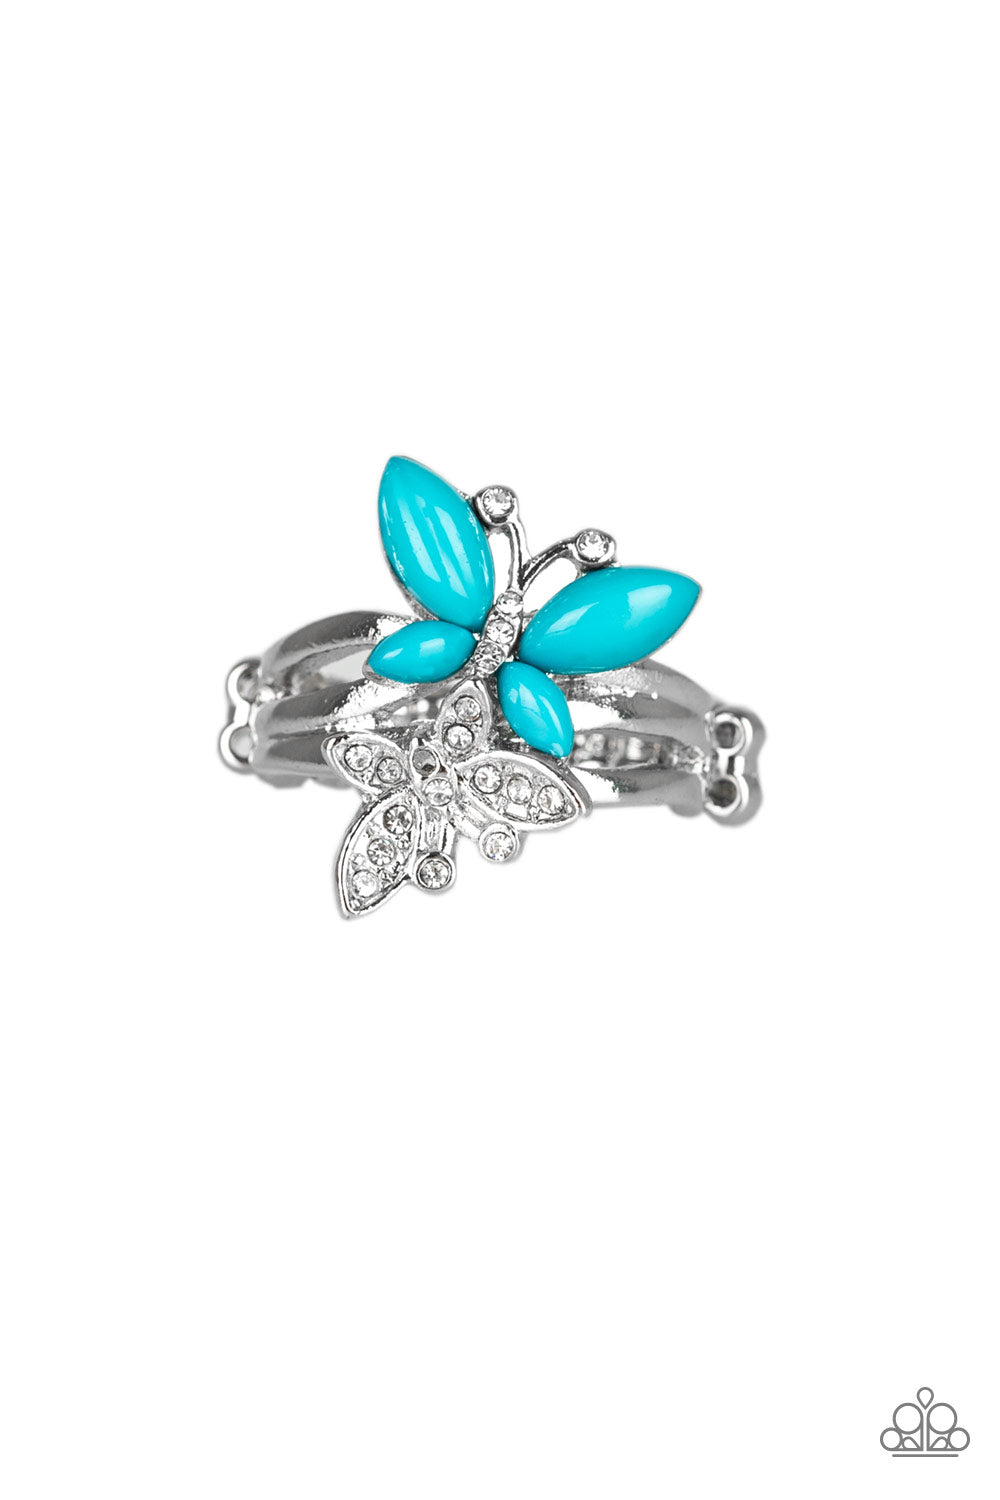 Flutter Flirt - blue - Paparazzi ring